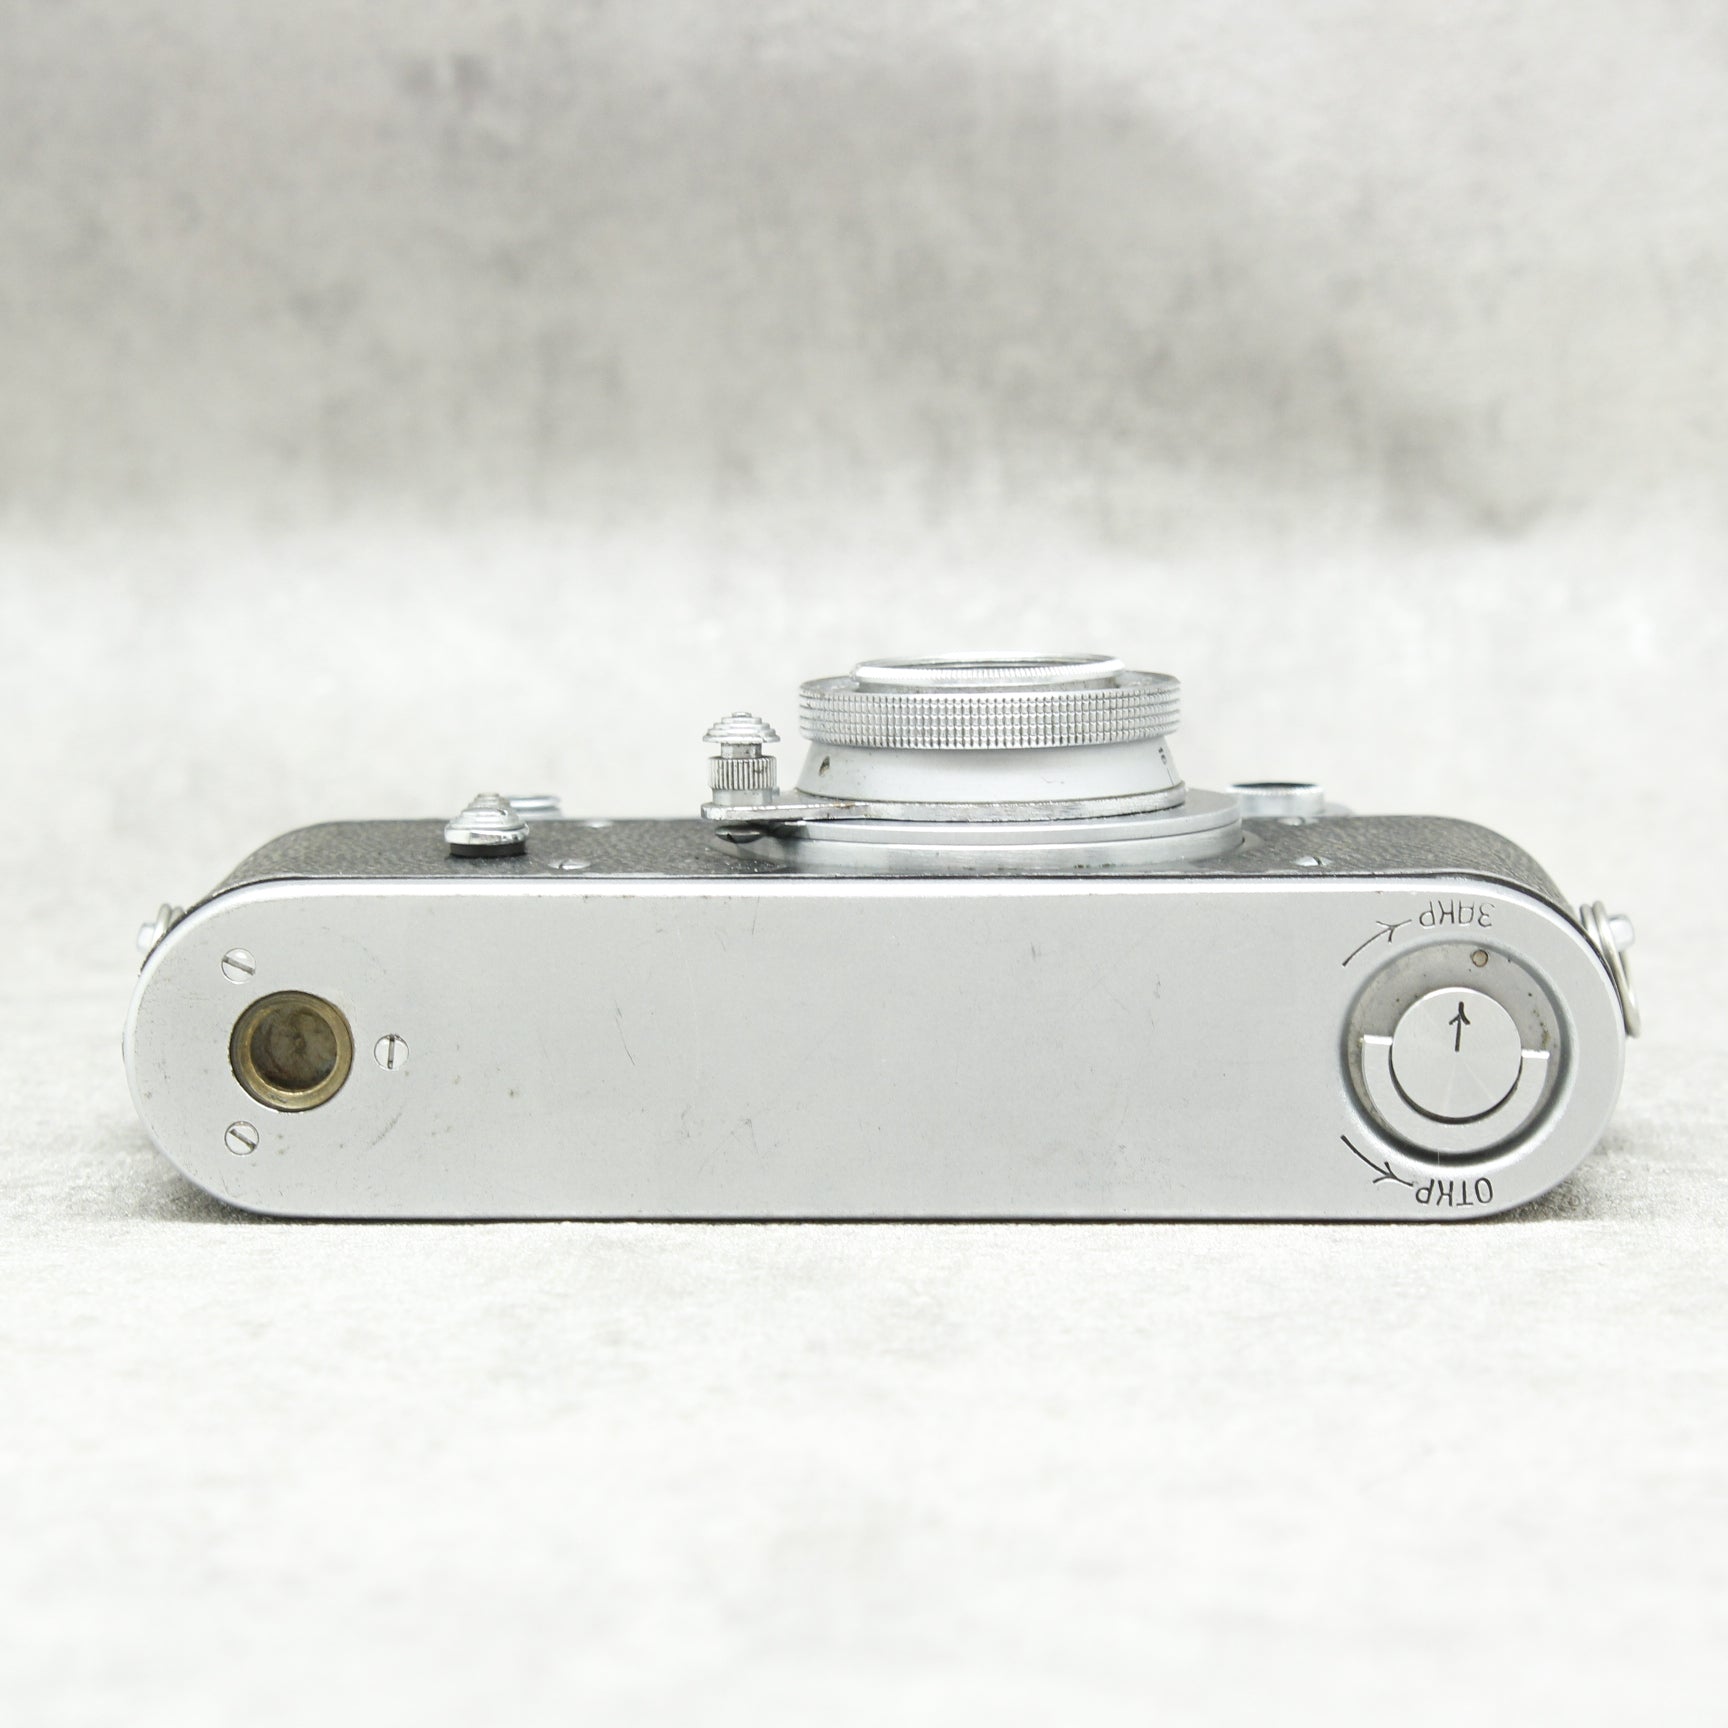 中古品 ボディ Zorki2C レンズ INDUSTAR-50 50mm/f3.5 【6月10日(土)のYouTube生配信でご紹介】